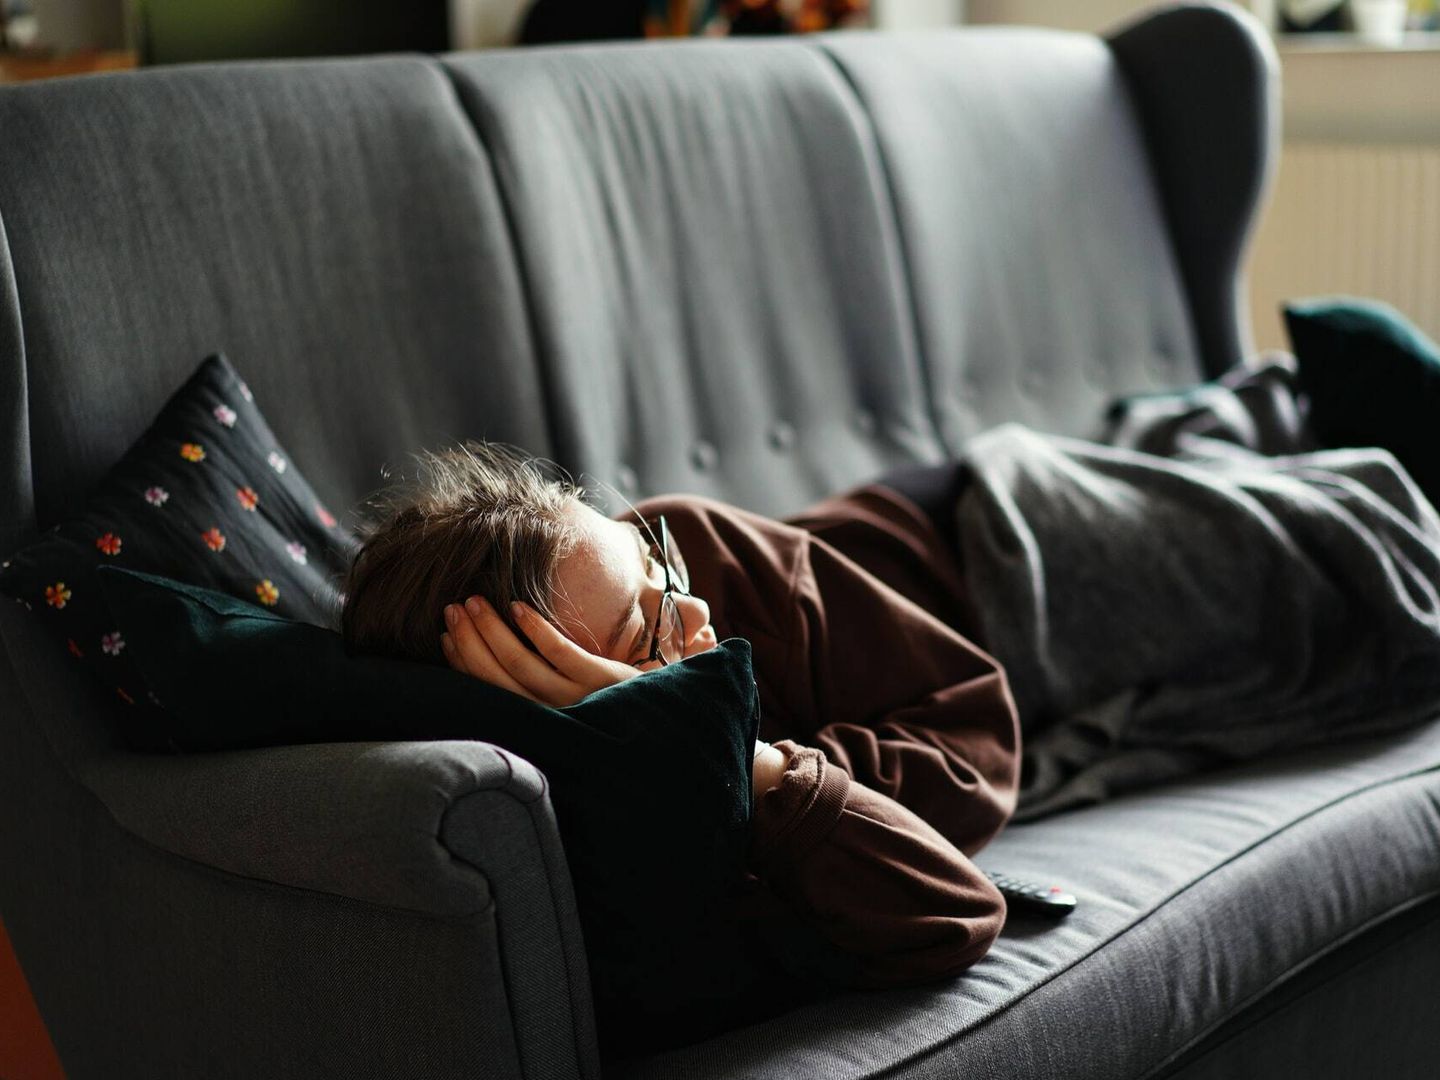 Si duermes peor por estar viendo la televisión, puede que te notes agotado por la mañana y te vuelvas más sedentario (Unsplash)